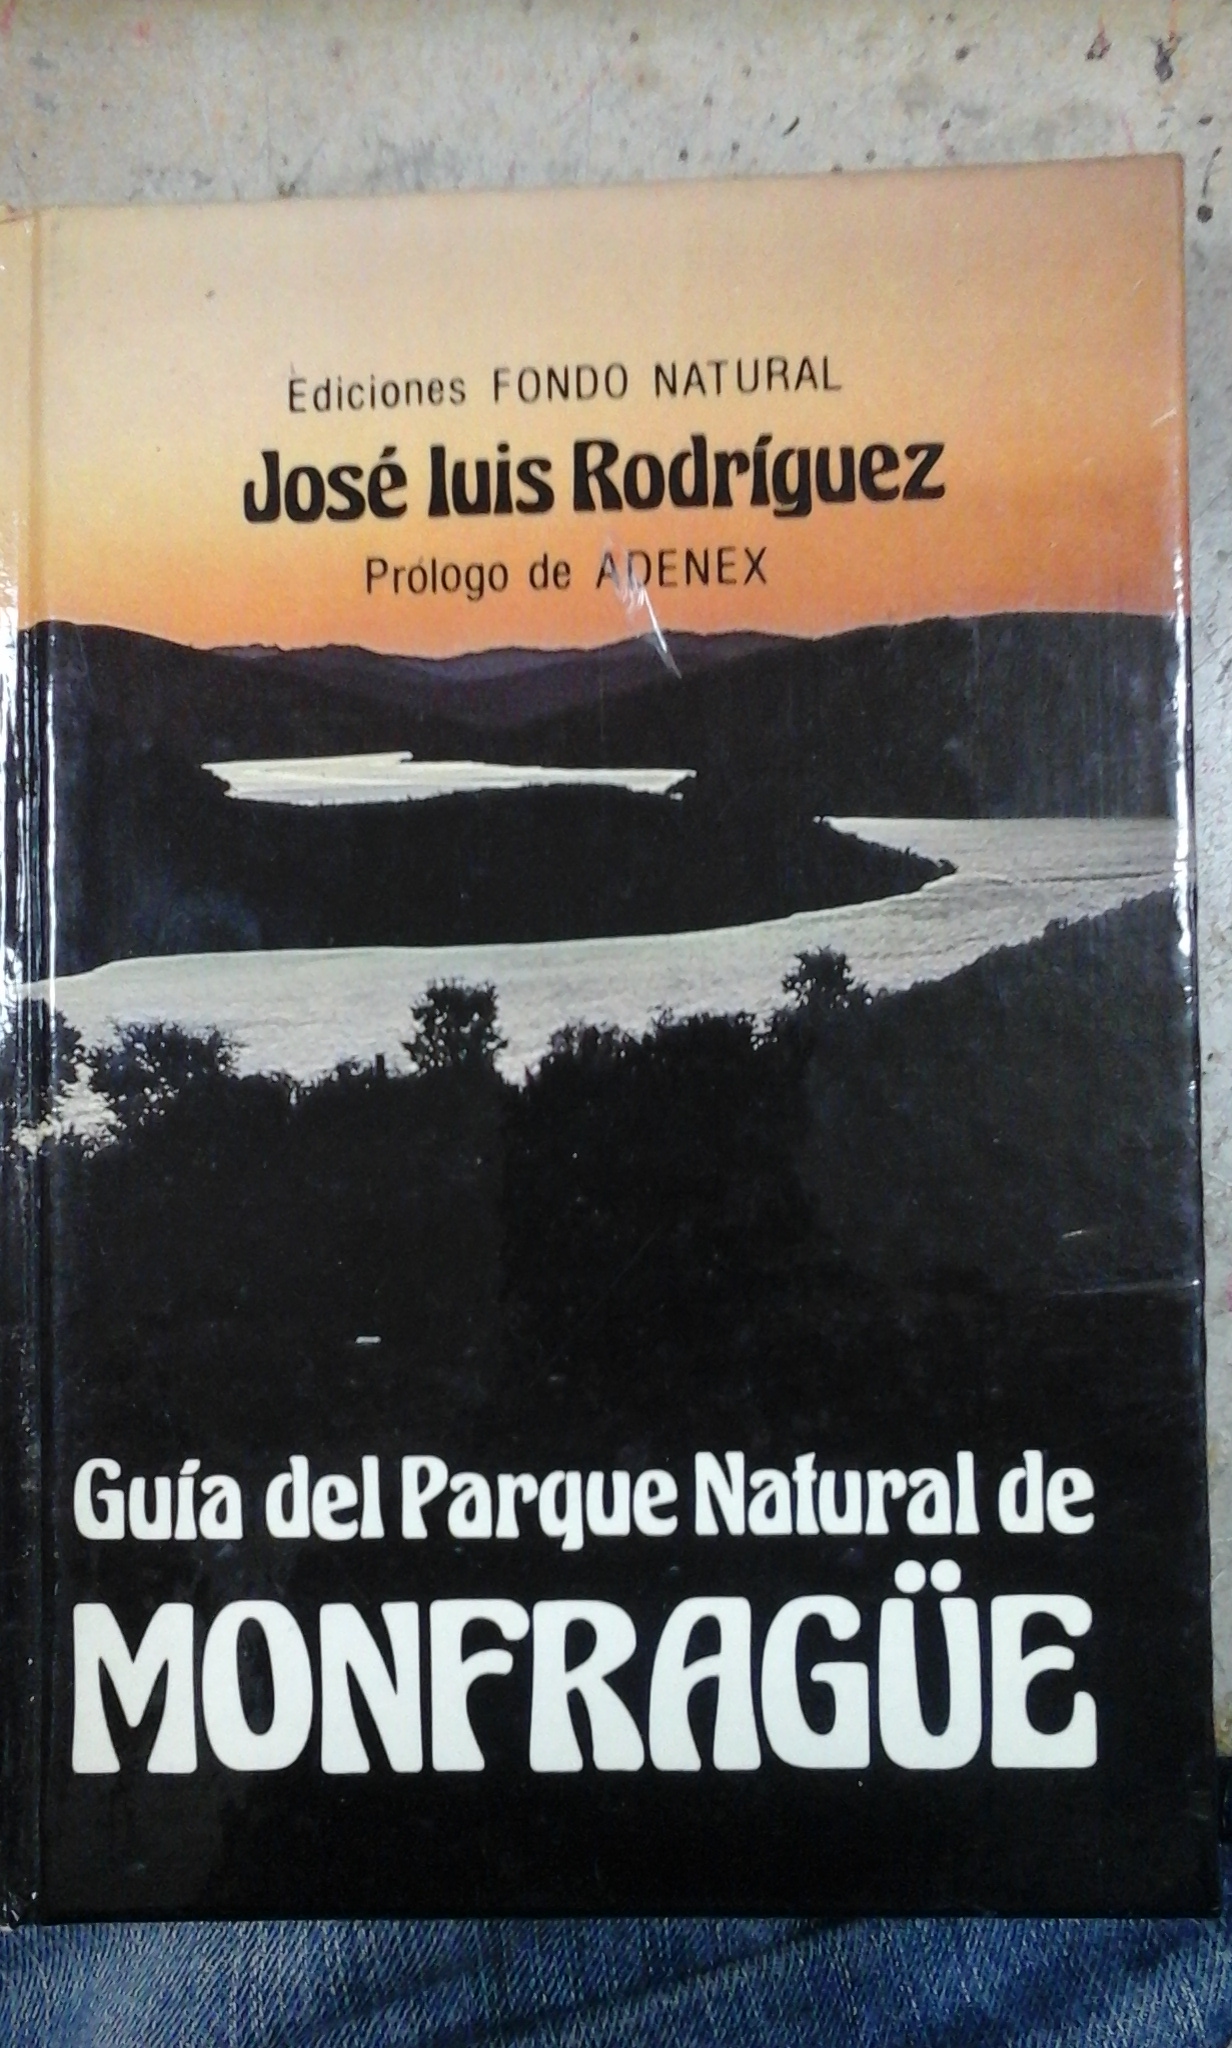 GUÍA DEL PARQUE NATURAL DE MONFRAGÜE (Madrid, 1985) - José Luis Rodríguez